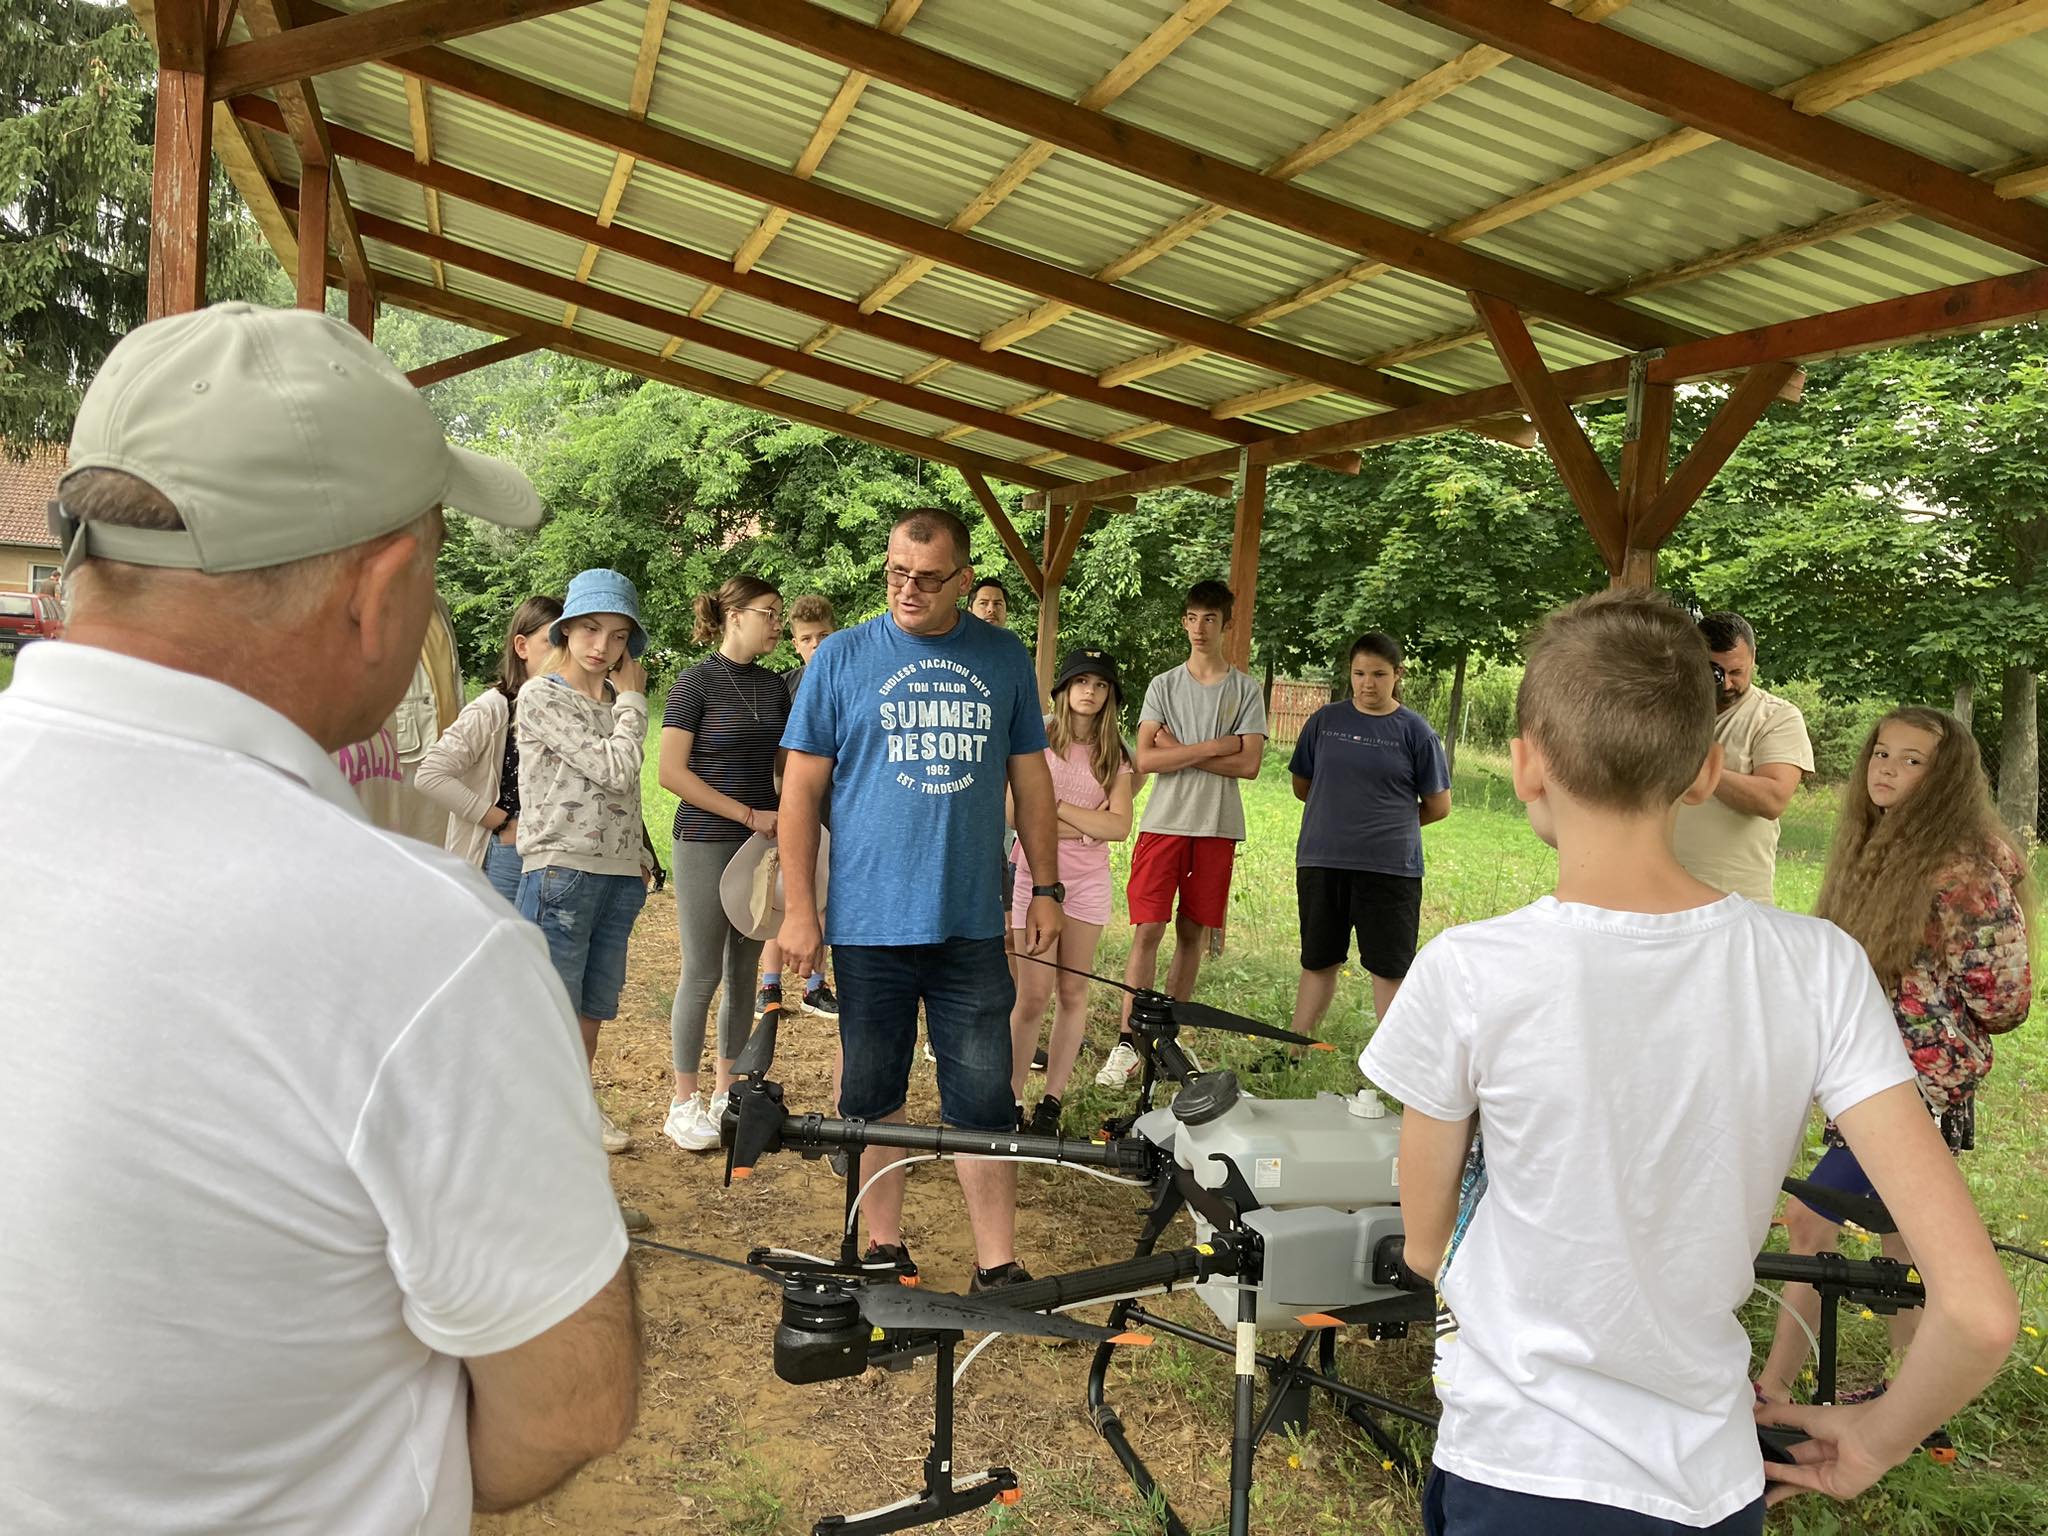 Egy csapat ember egy fából készült lombkorona alatt áll egy kertben, egy kék pólós férfi köré gyűlve, aki a jelek szerint a földön lévő drónról magyaráz valamit. A csoport felnőttekből és gyerekekből áll, mindannyian figyelmesen hallgatnak.